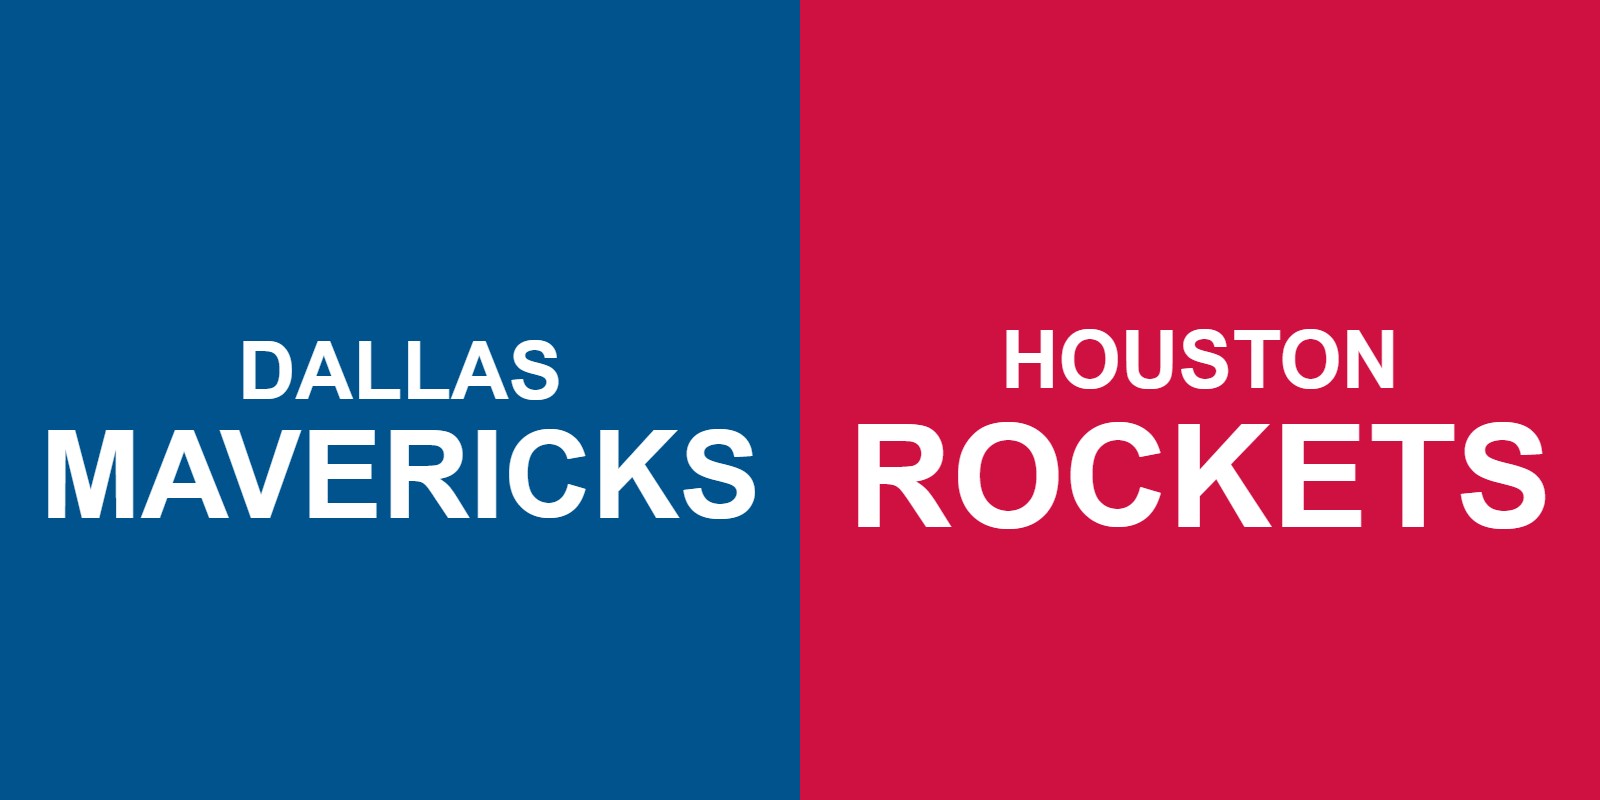 Mavericks vs Rockets